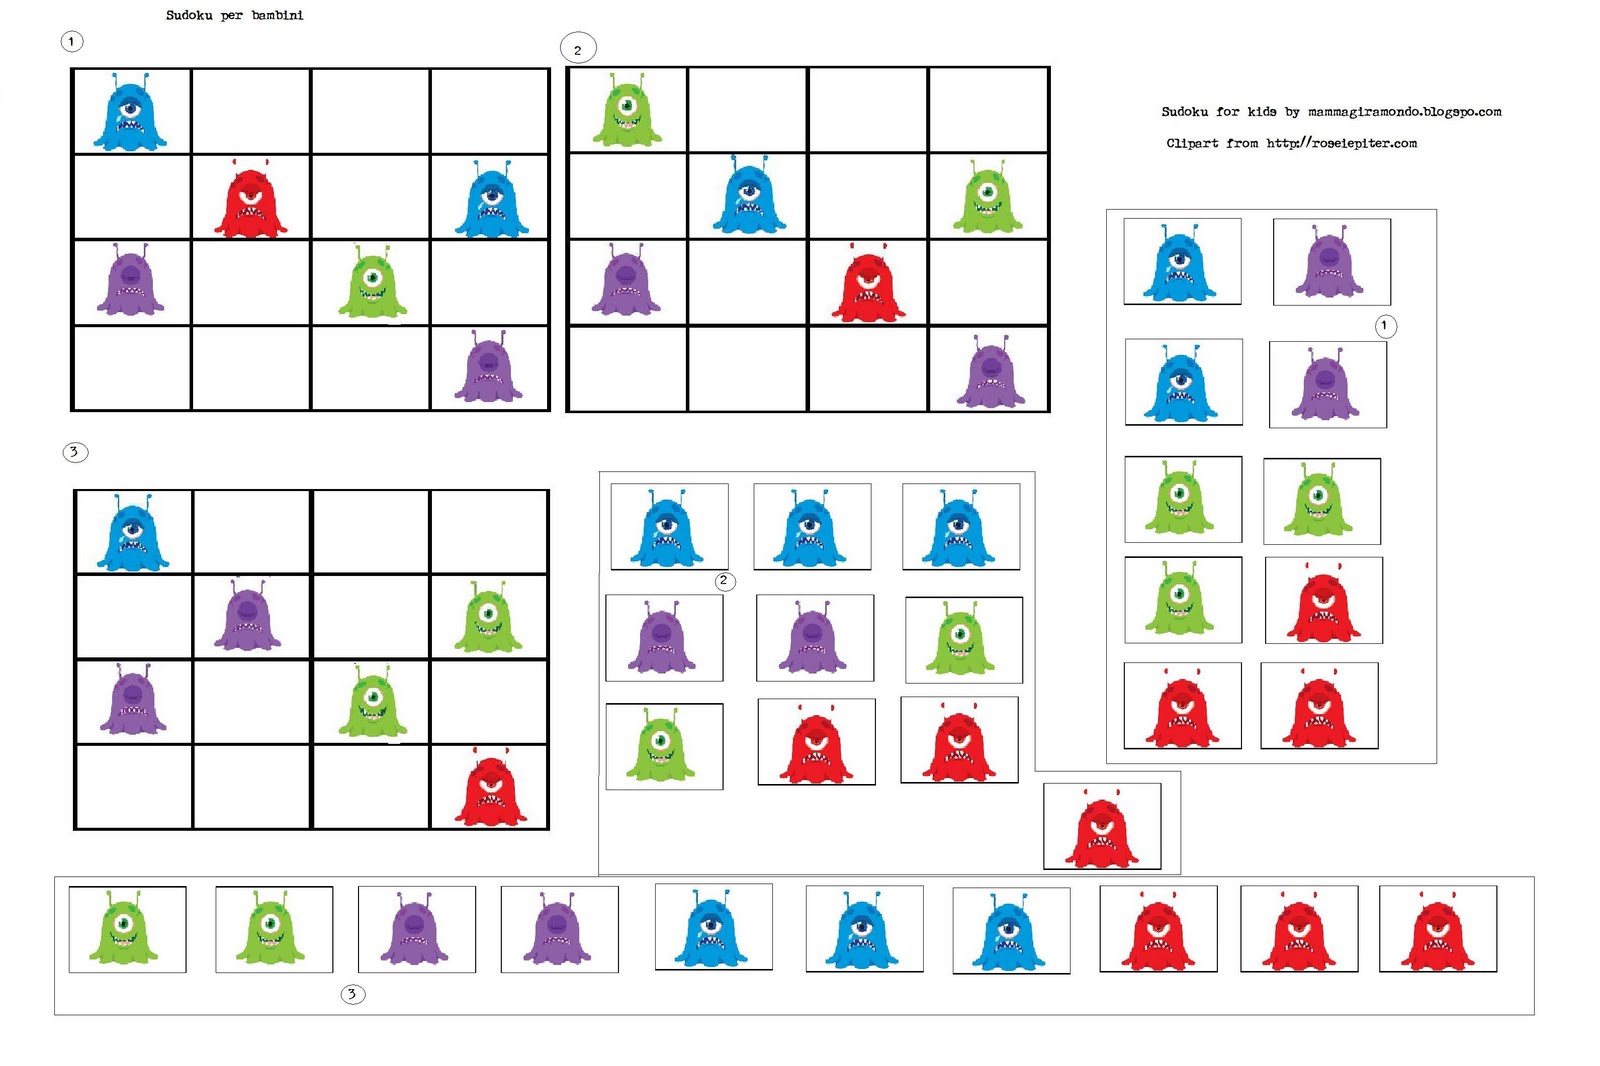 sudoku per bambini 9 anni: giochi da giocare con la famiglia, 200